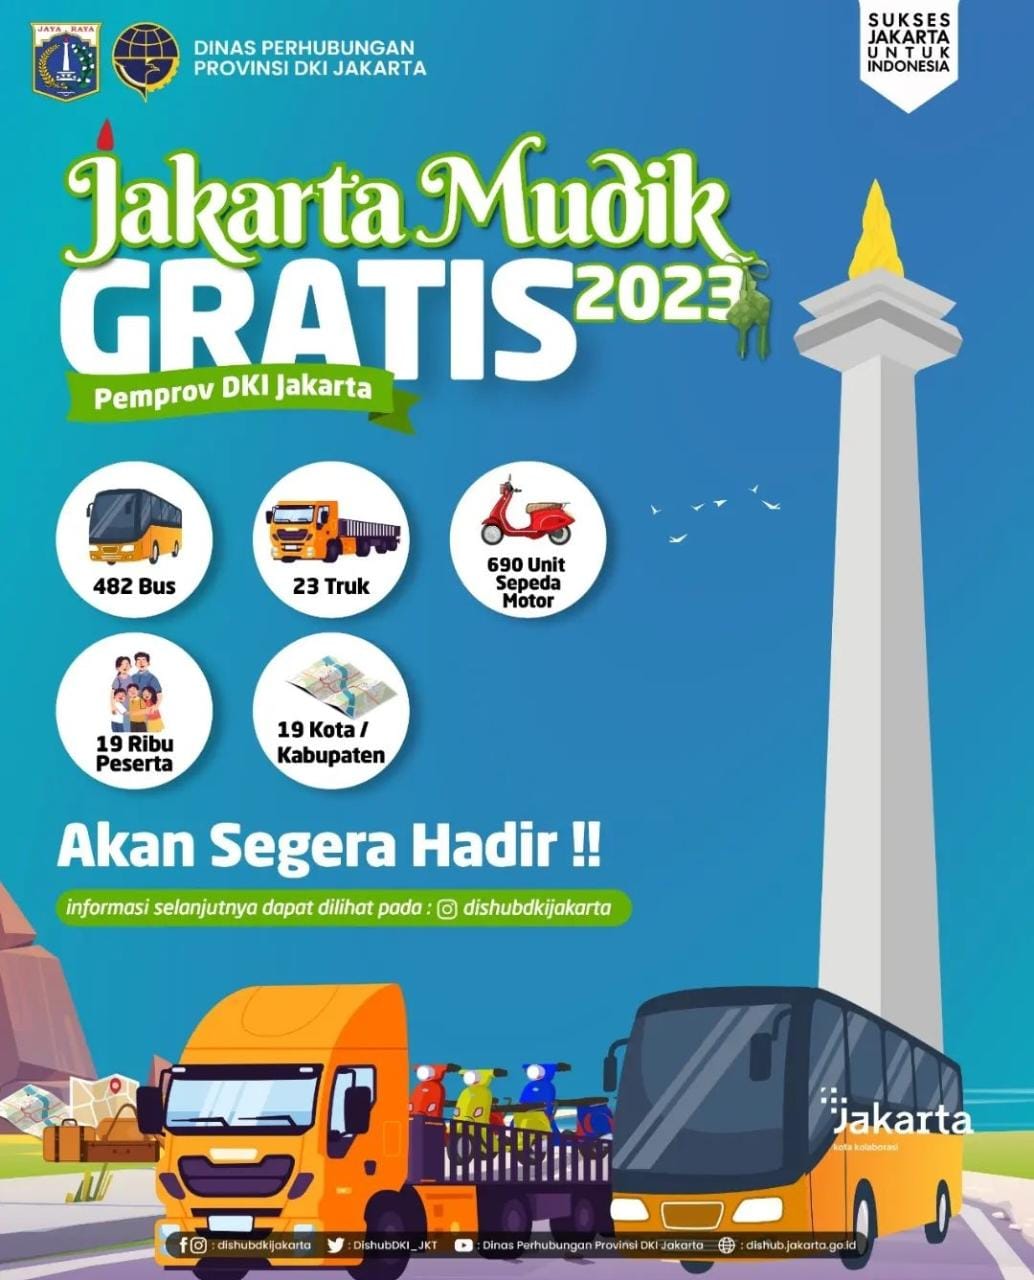 Segera Daftar! Mudik Gratis Pemprov DKI Jakarta 2023, Tersedia 19 Ribu Kuota Mudik Gratis ke 19 Kota Tujuan